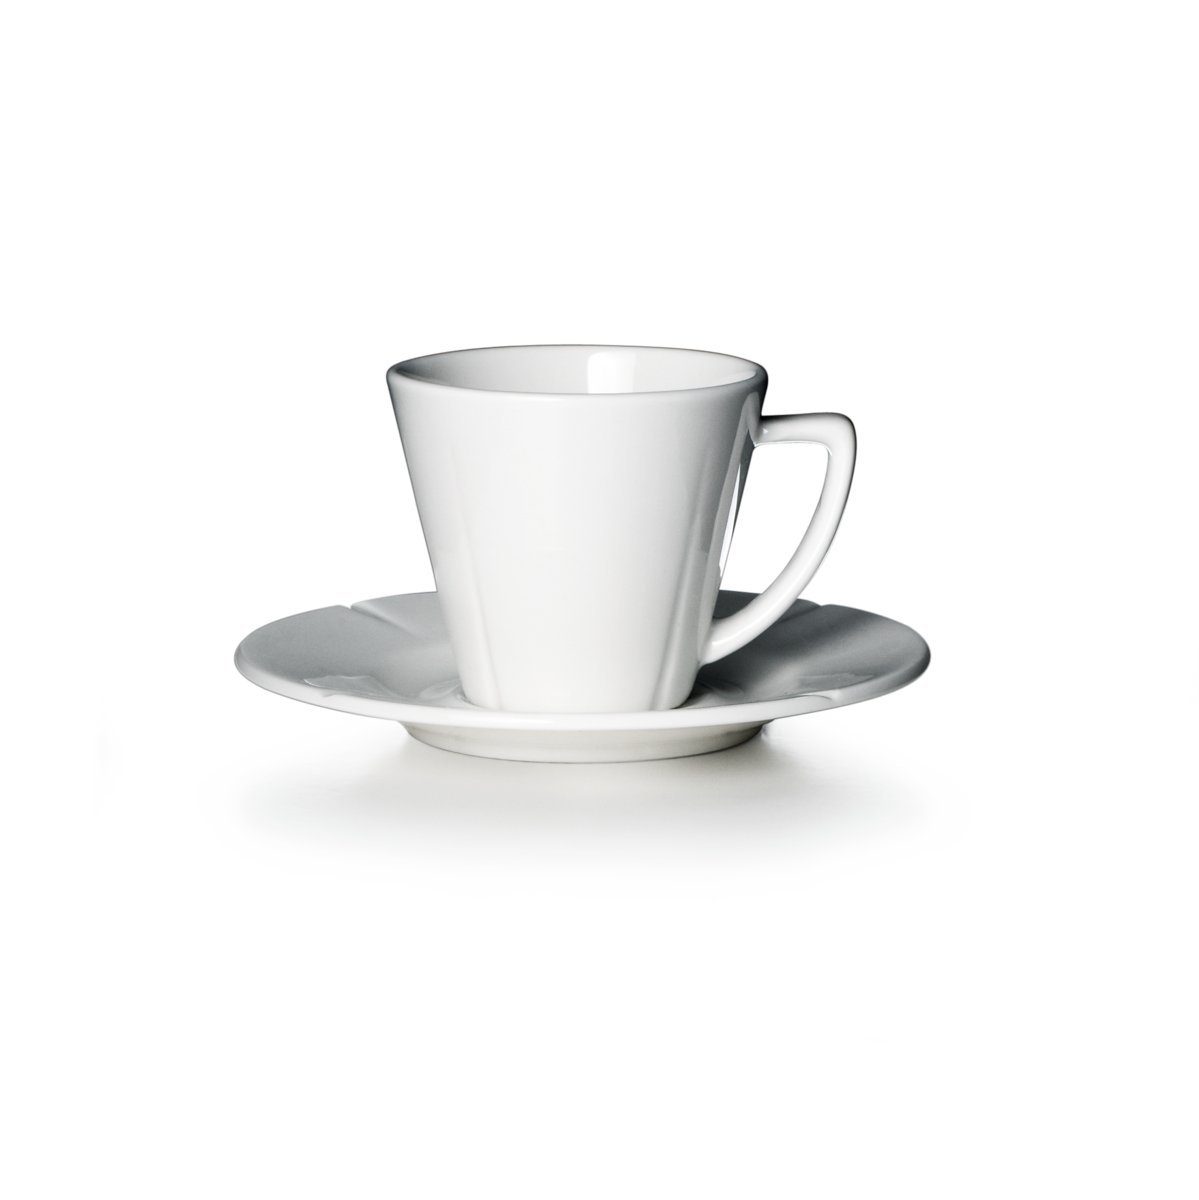 Rosendahl Espressotasse Grand Cru; Klassische Espressotasse mit passender Untertasse aus weißem Porzellan, Porzellan | Espressotassen